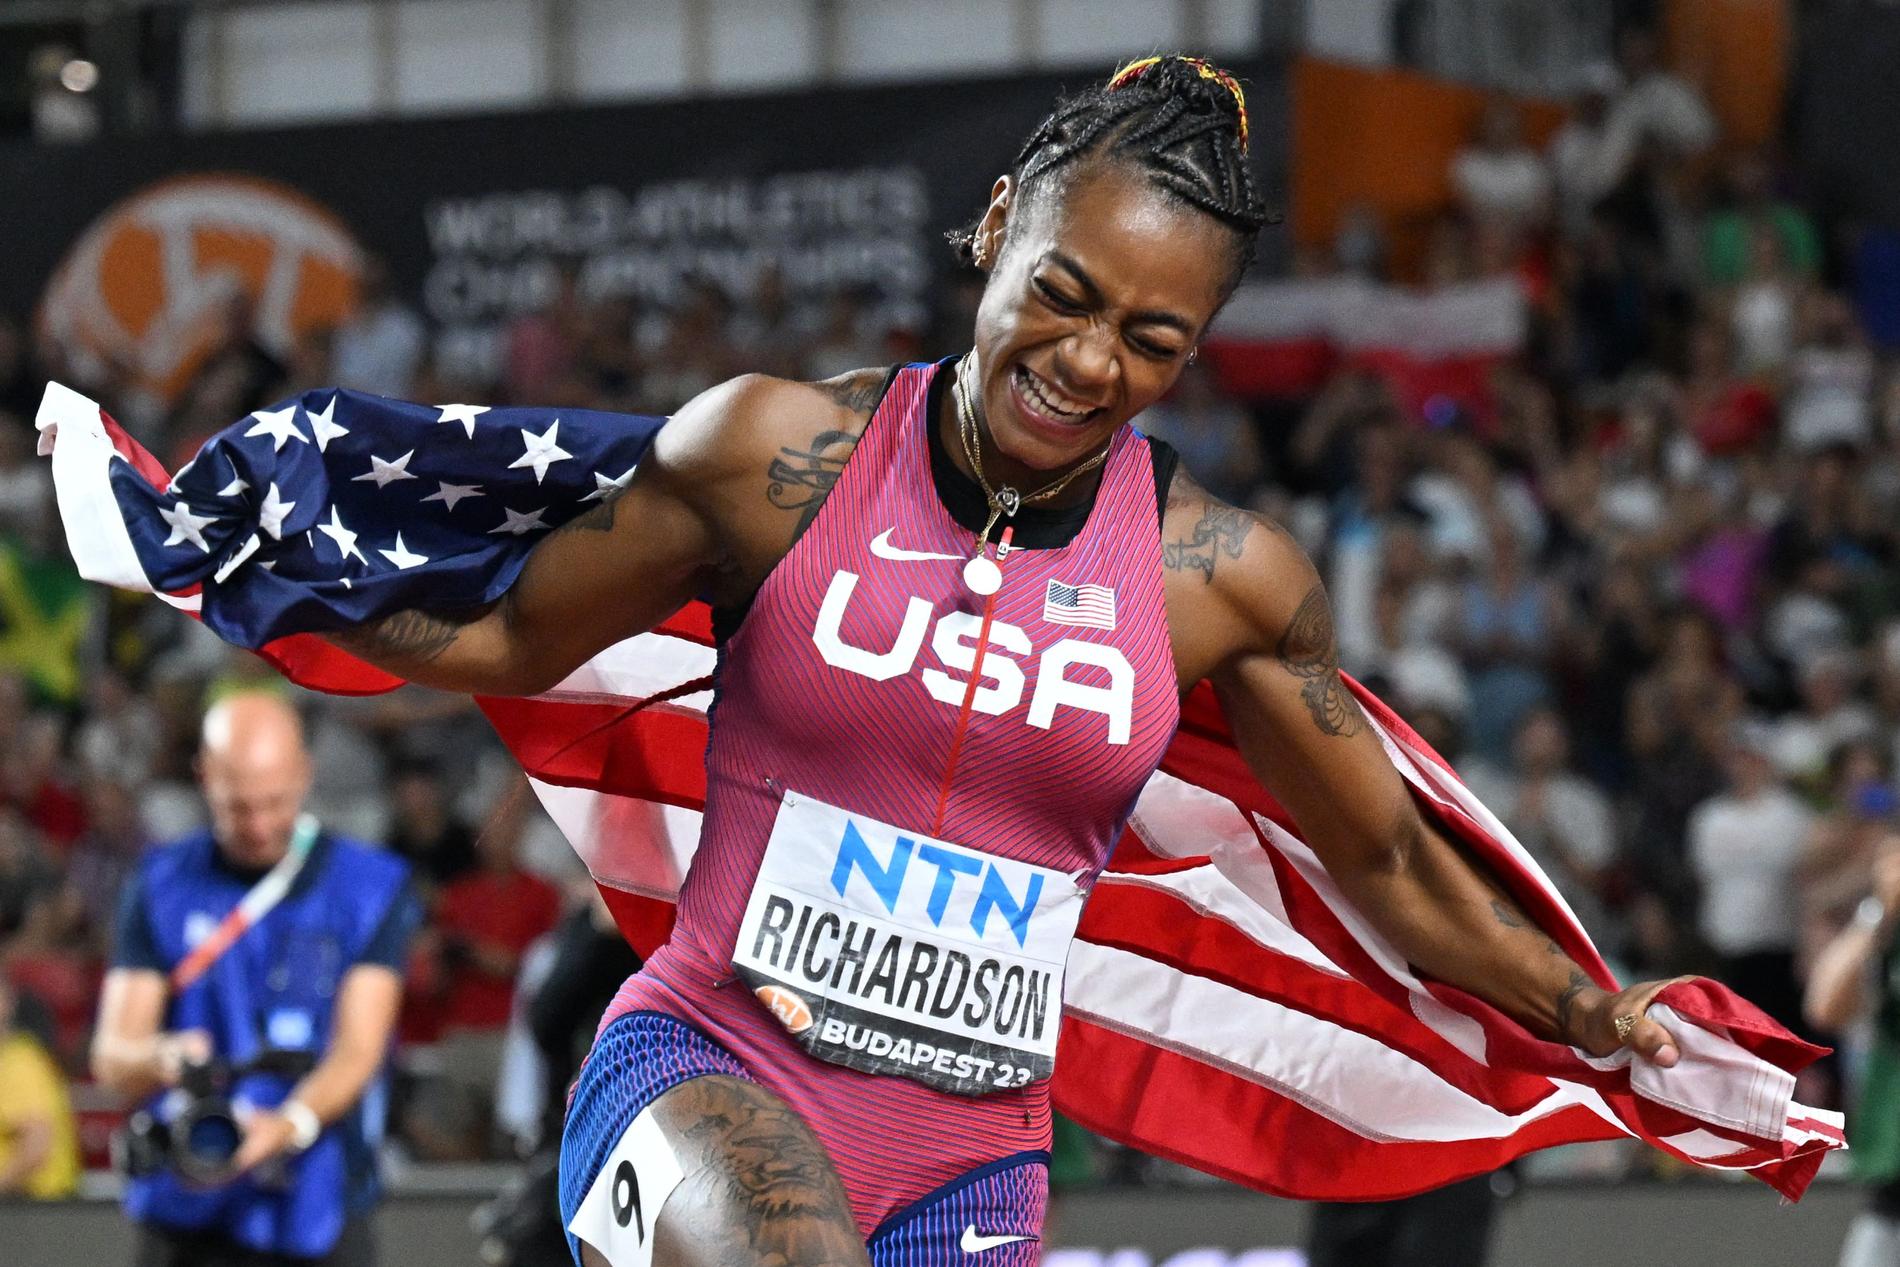 Richardson ha vinto la medaglia d’oro ai Campionati del mondo e ha stabilito un record del campionato